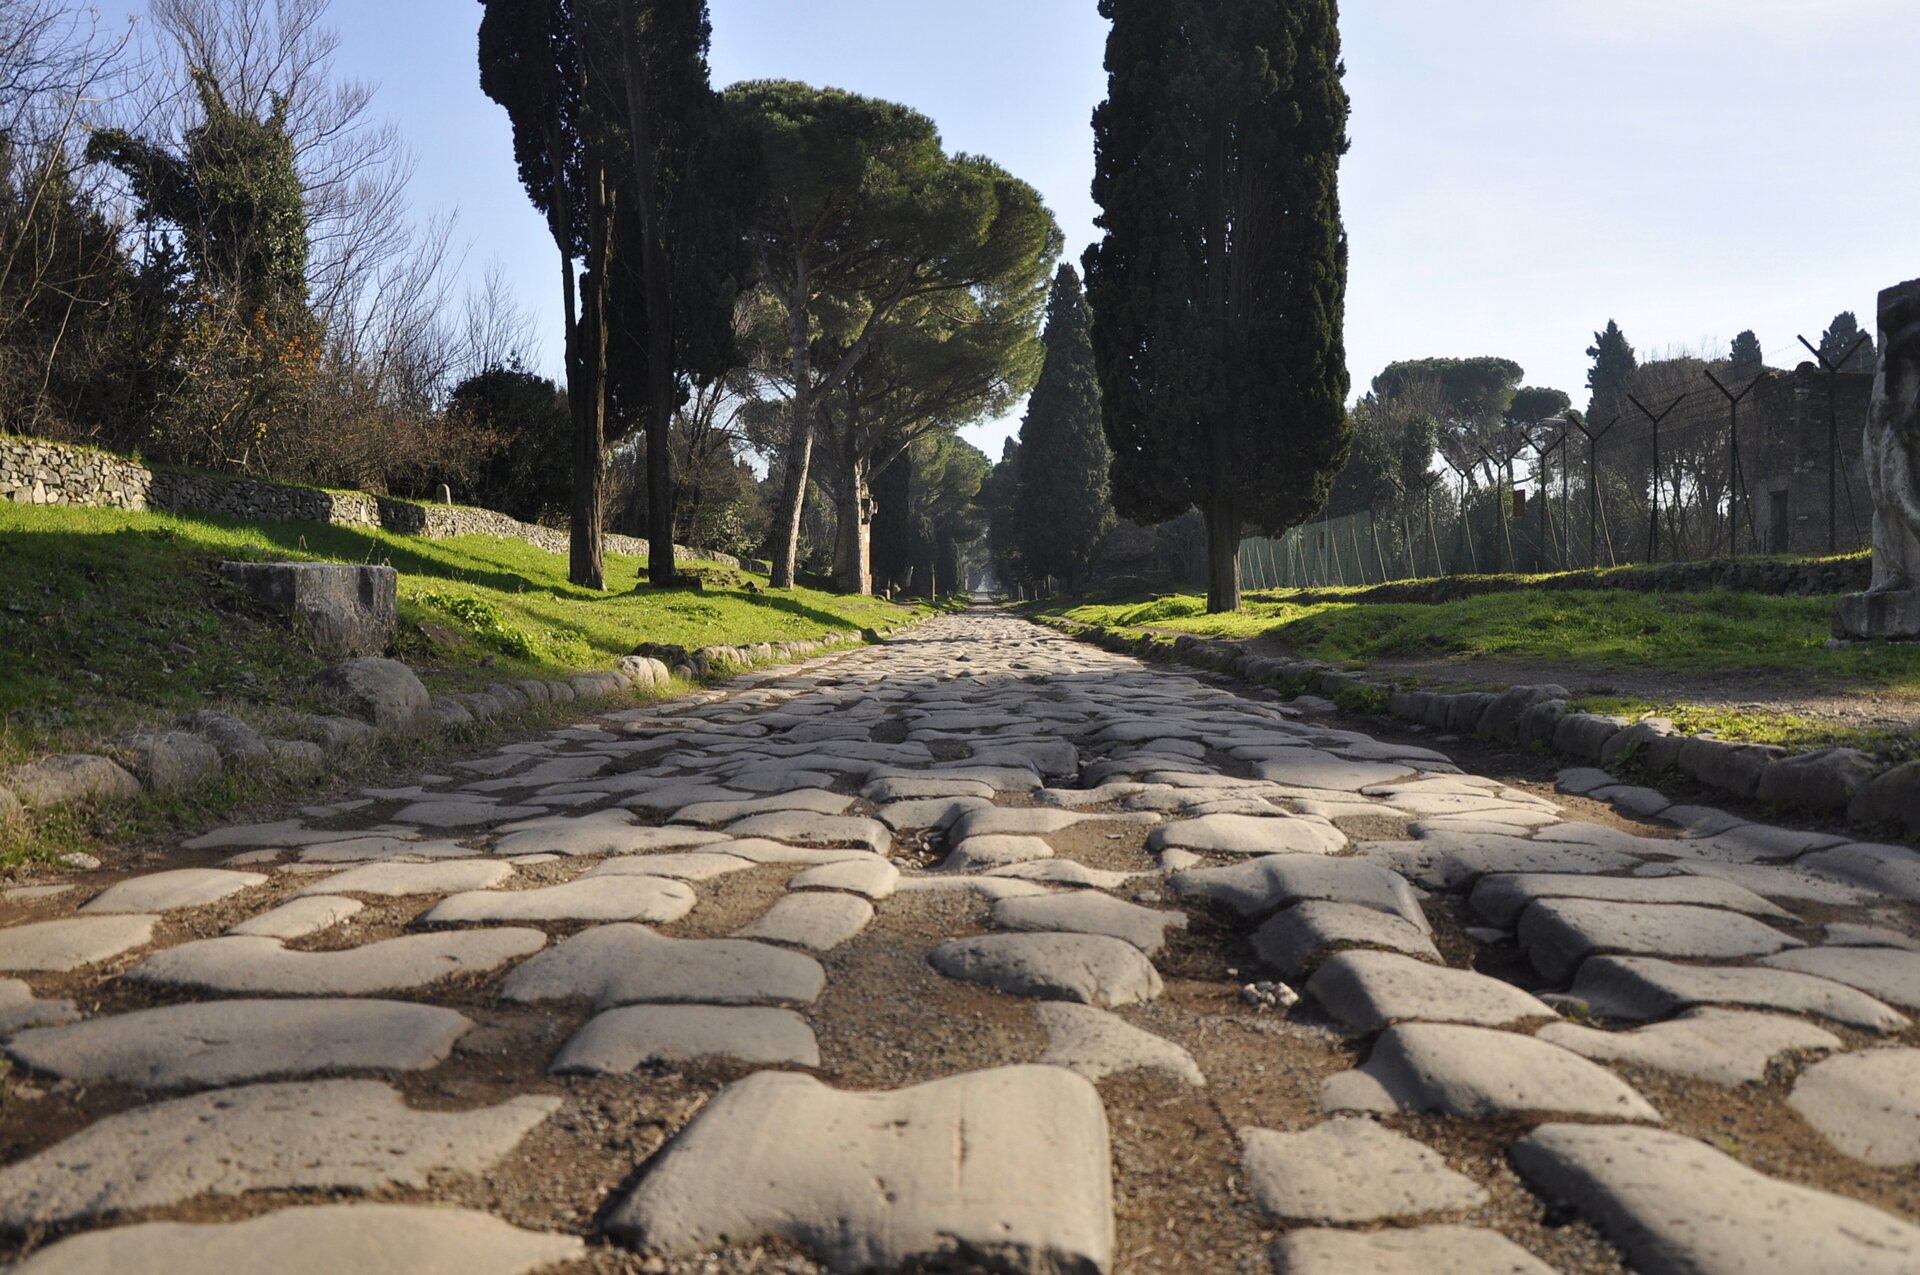 Ilustracja przedstawiająca rzymską drogę  Via Appia. Droga jest wyłożona kamieniami. Po obu jej stronach znajdują się drzewa i połacia trawy, zaś w oddali jest las.